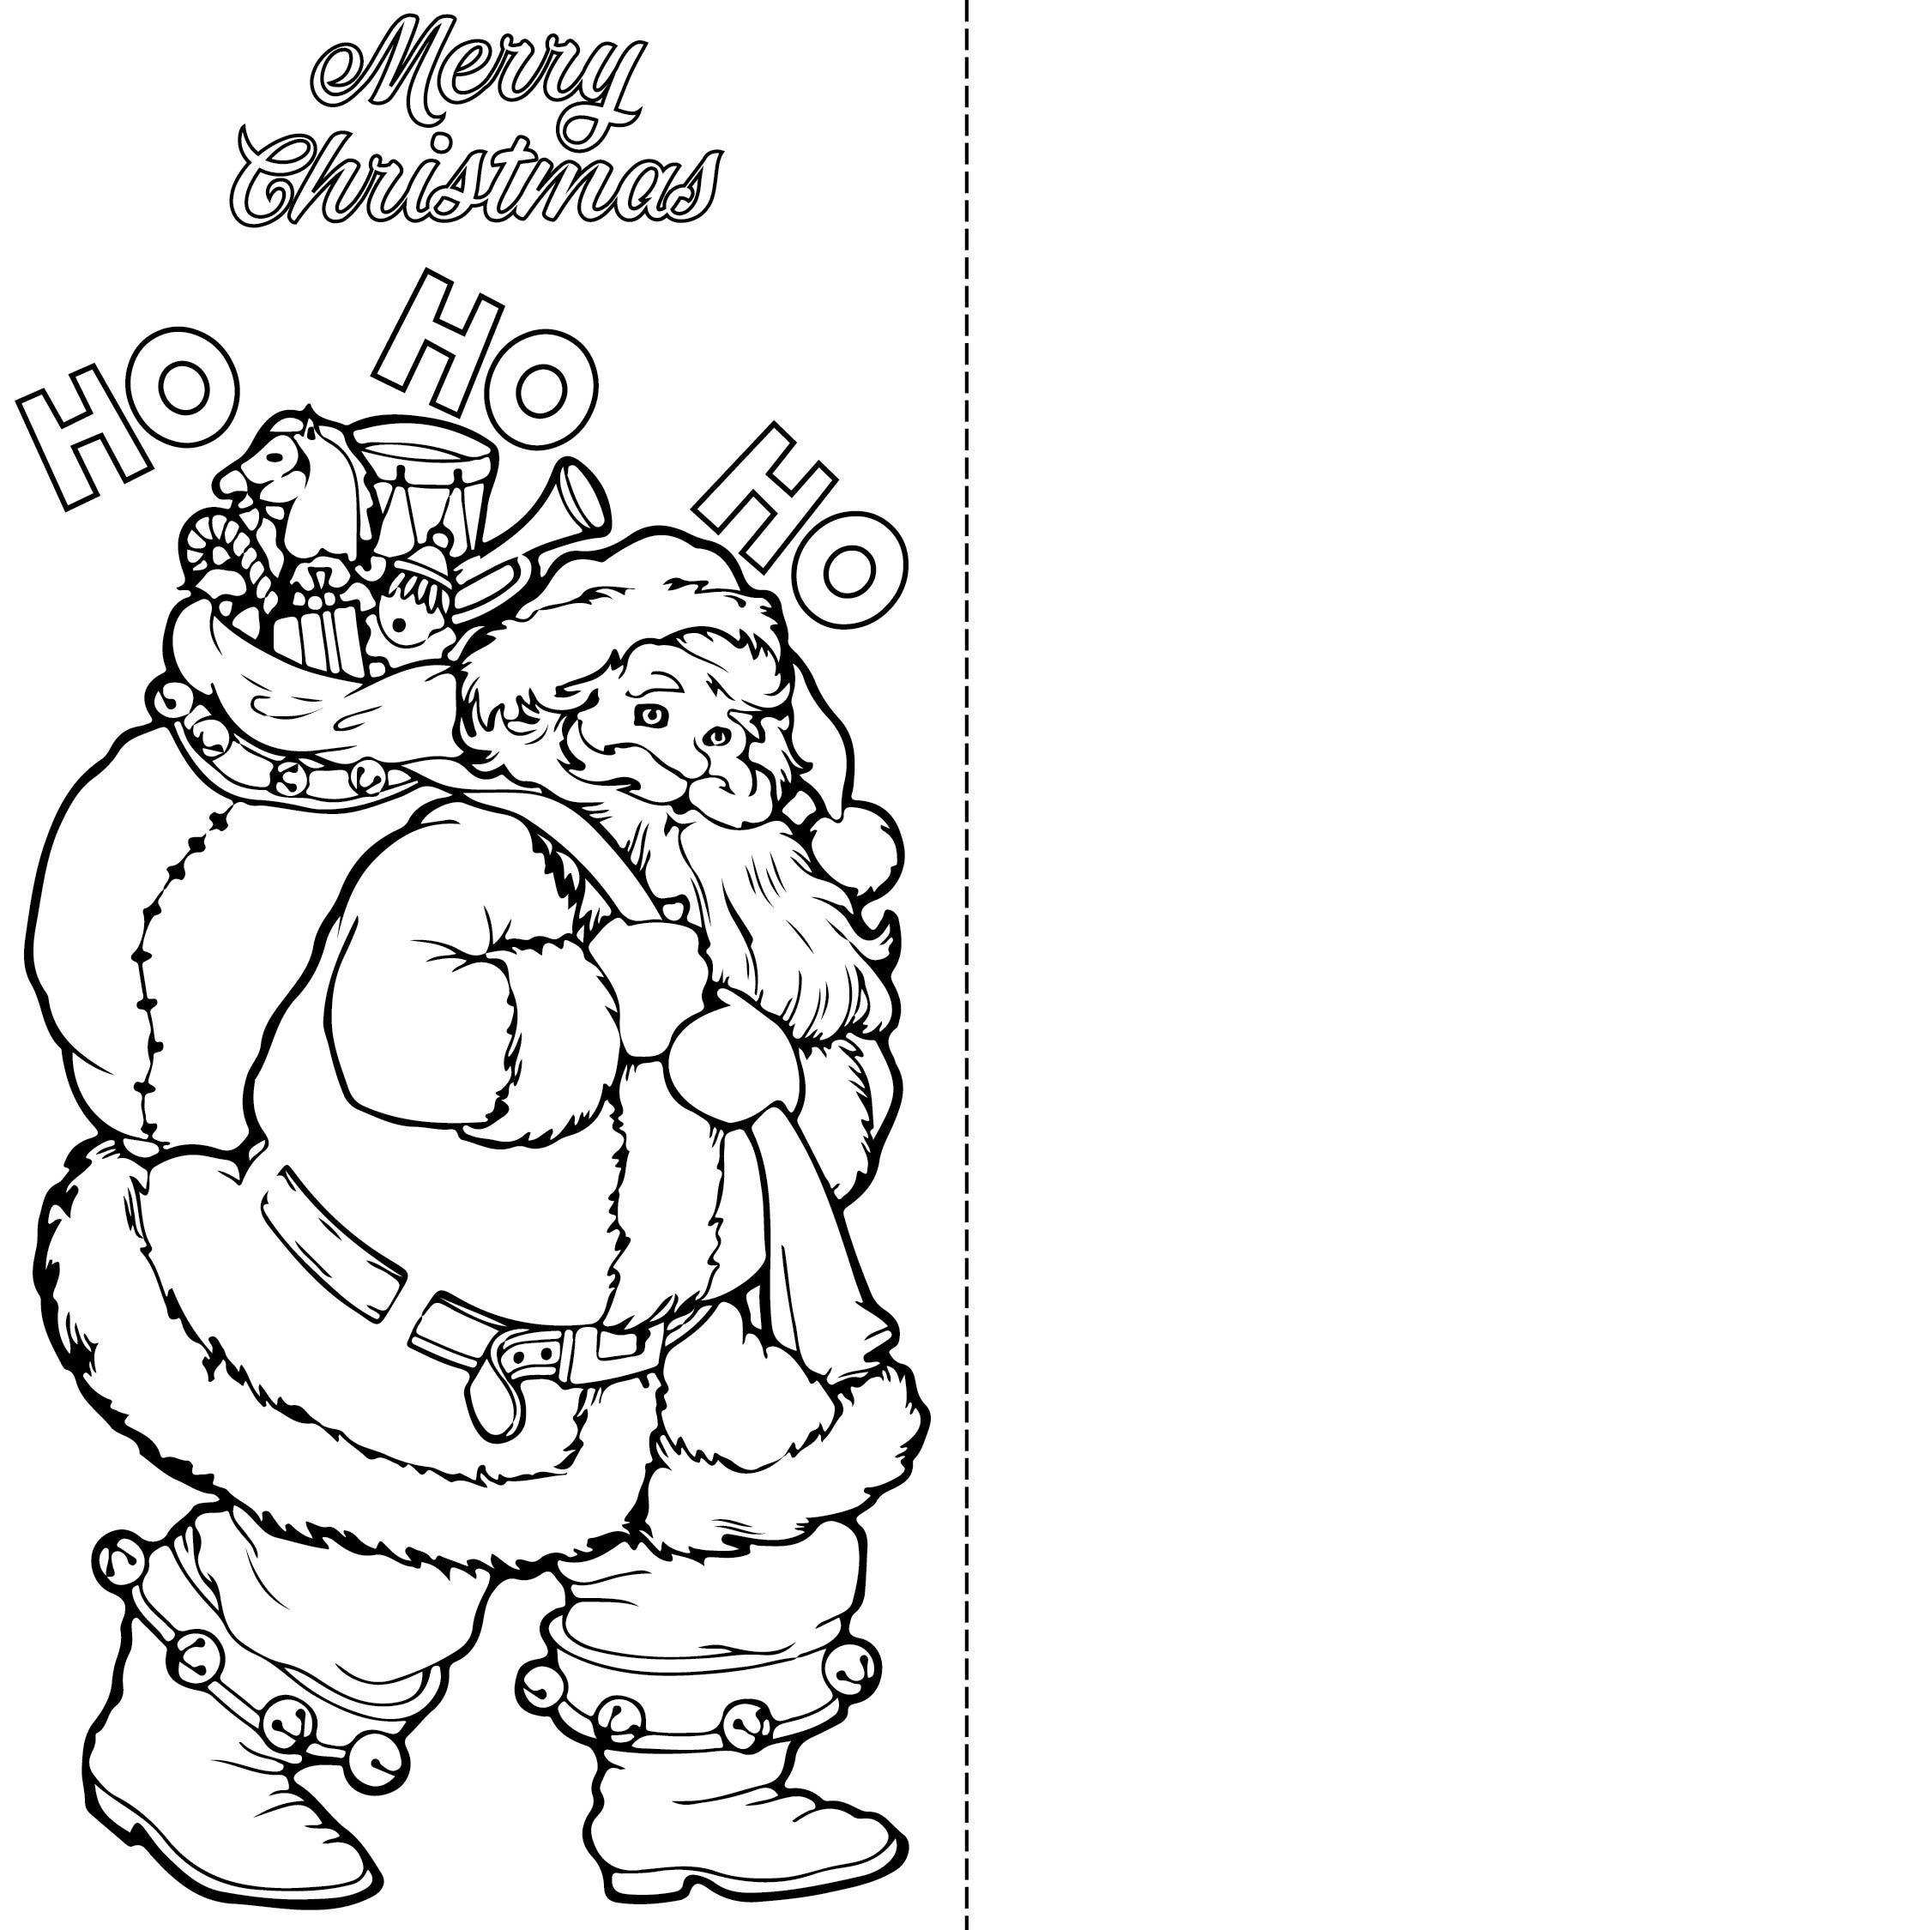 Free Printable Christmas Cards To Color - Printable Templates Free